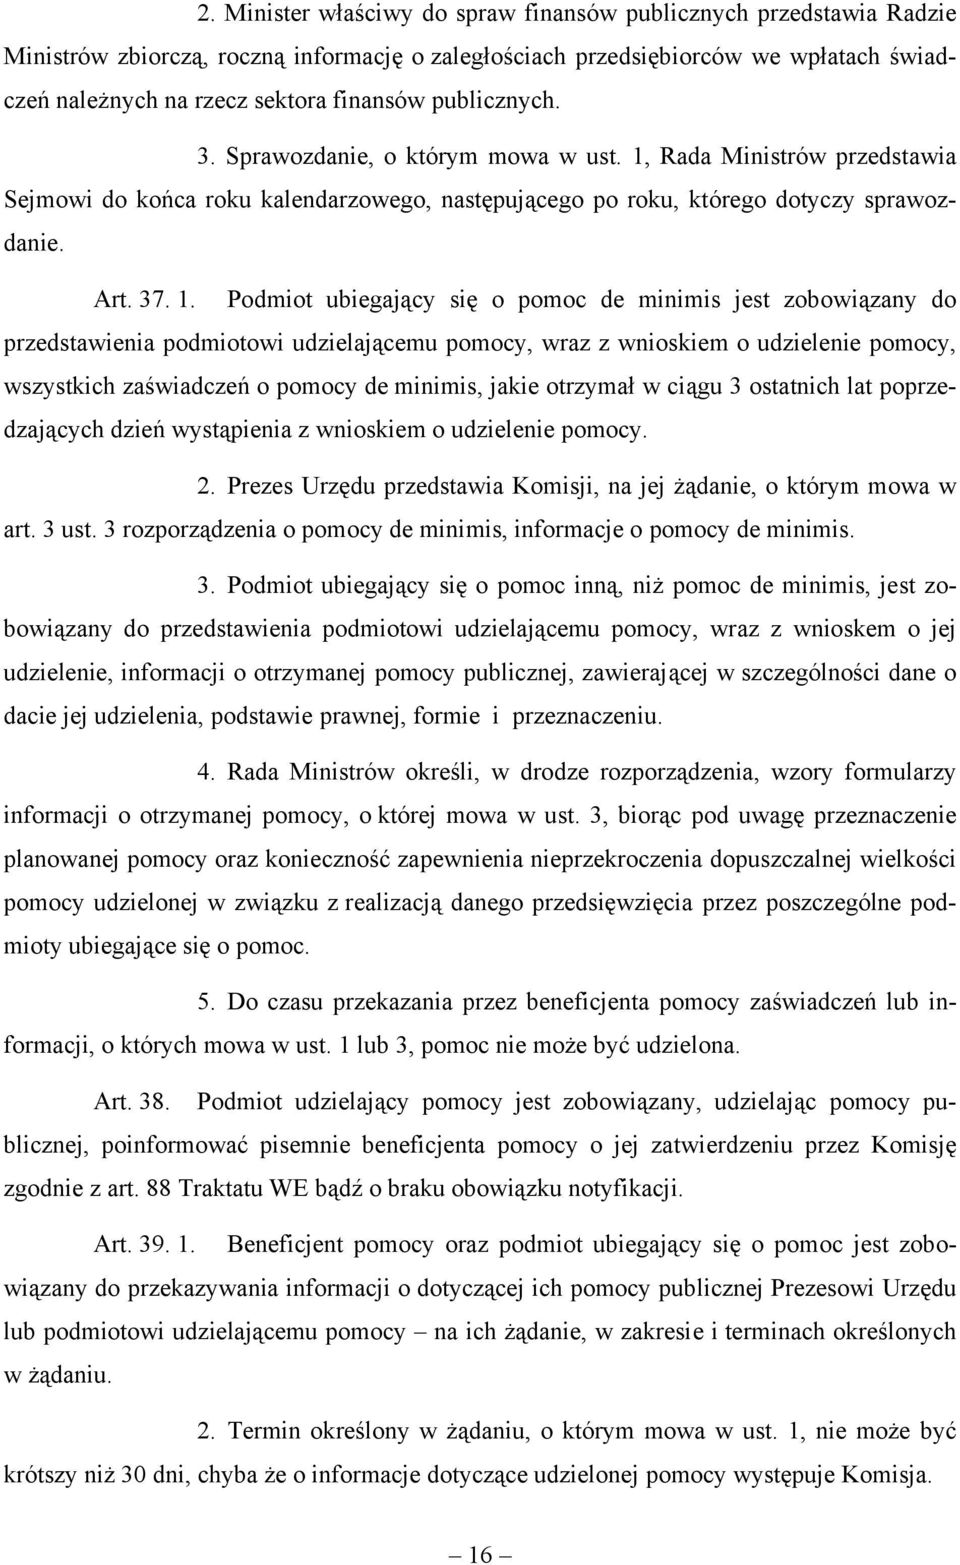 Rada Ministrów przedstawia Sejmowi do końca roku kalendarzowego, następującego po roku, którego dotyczy sprawozdanie. Art. 37. 1.